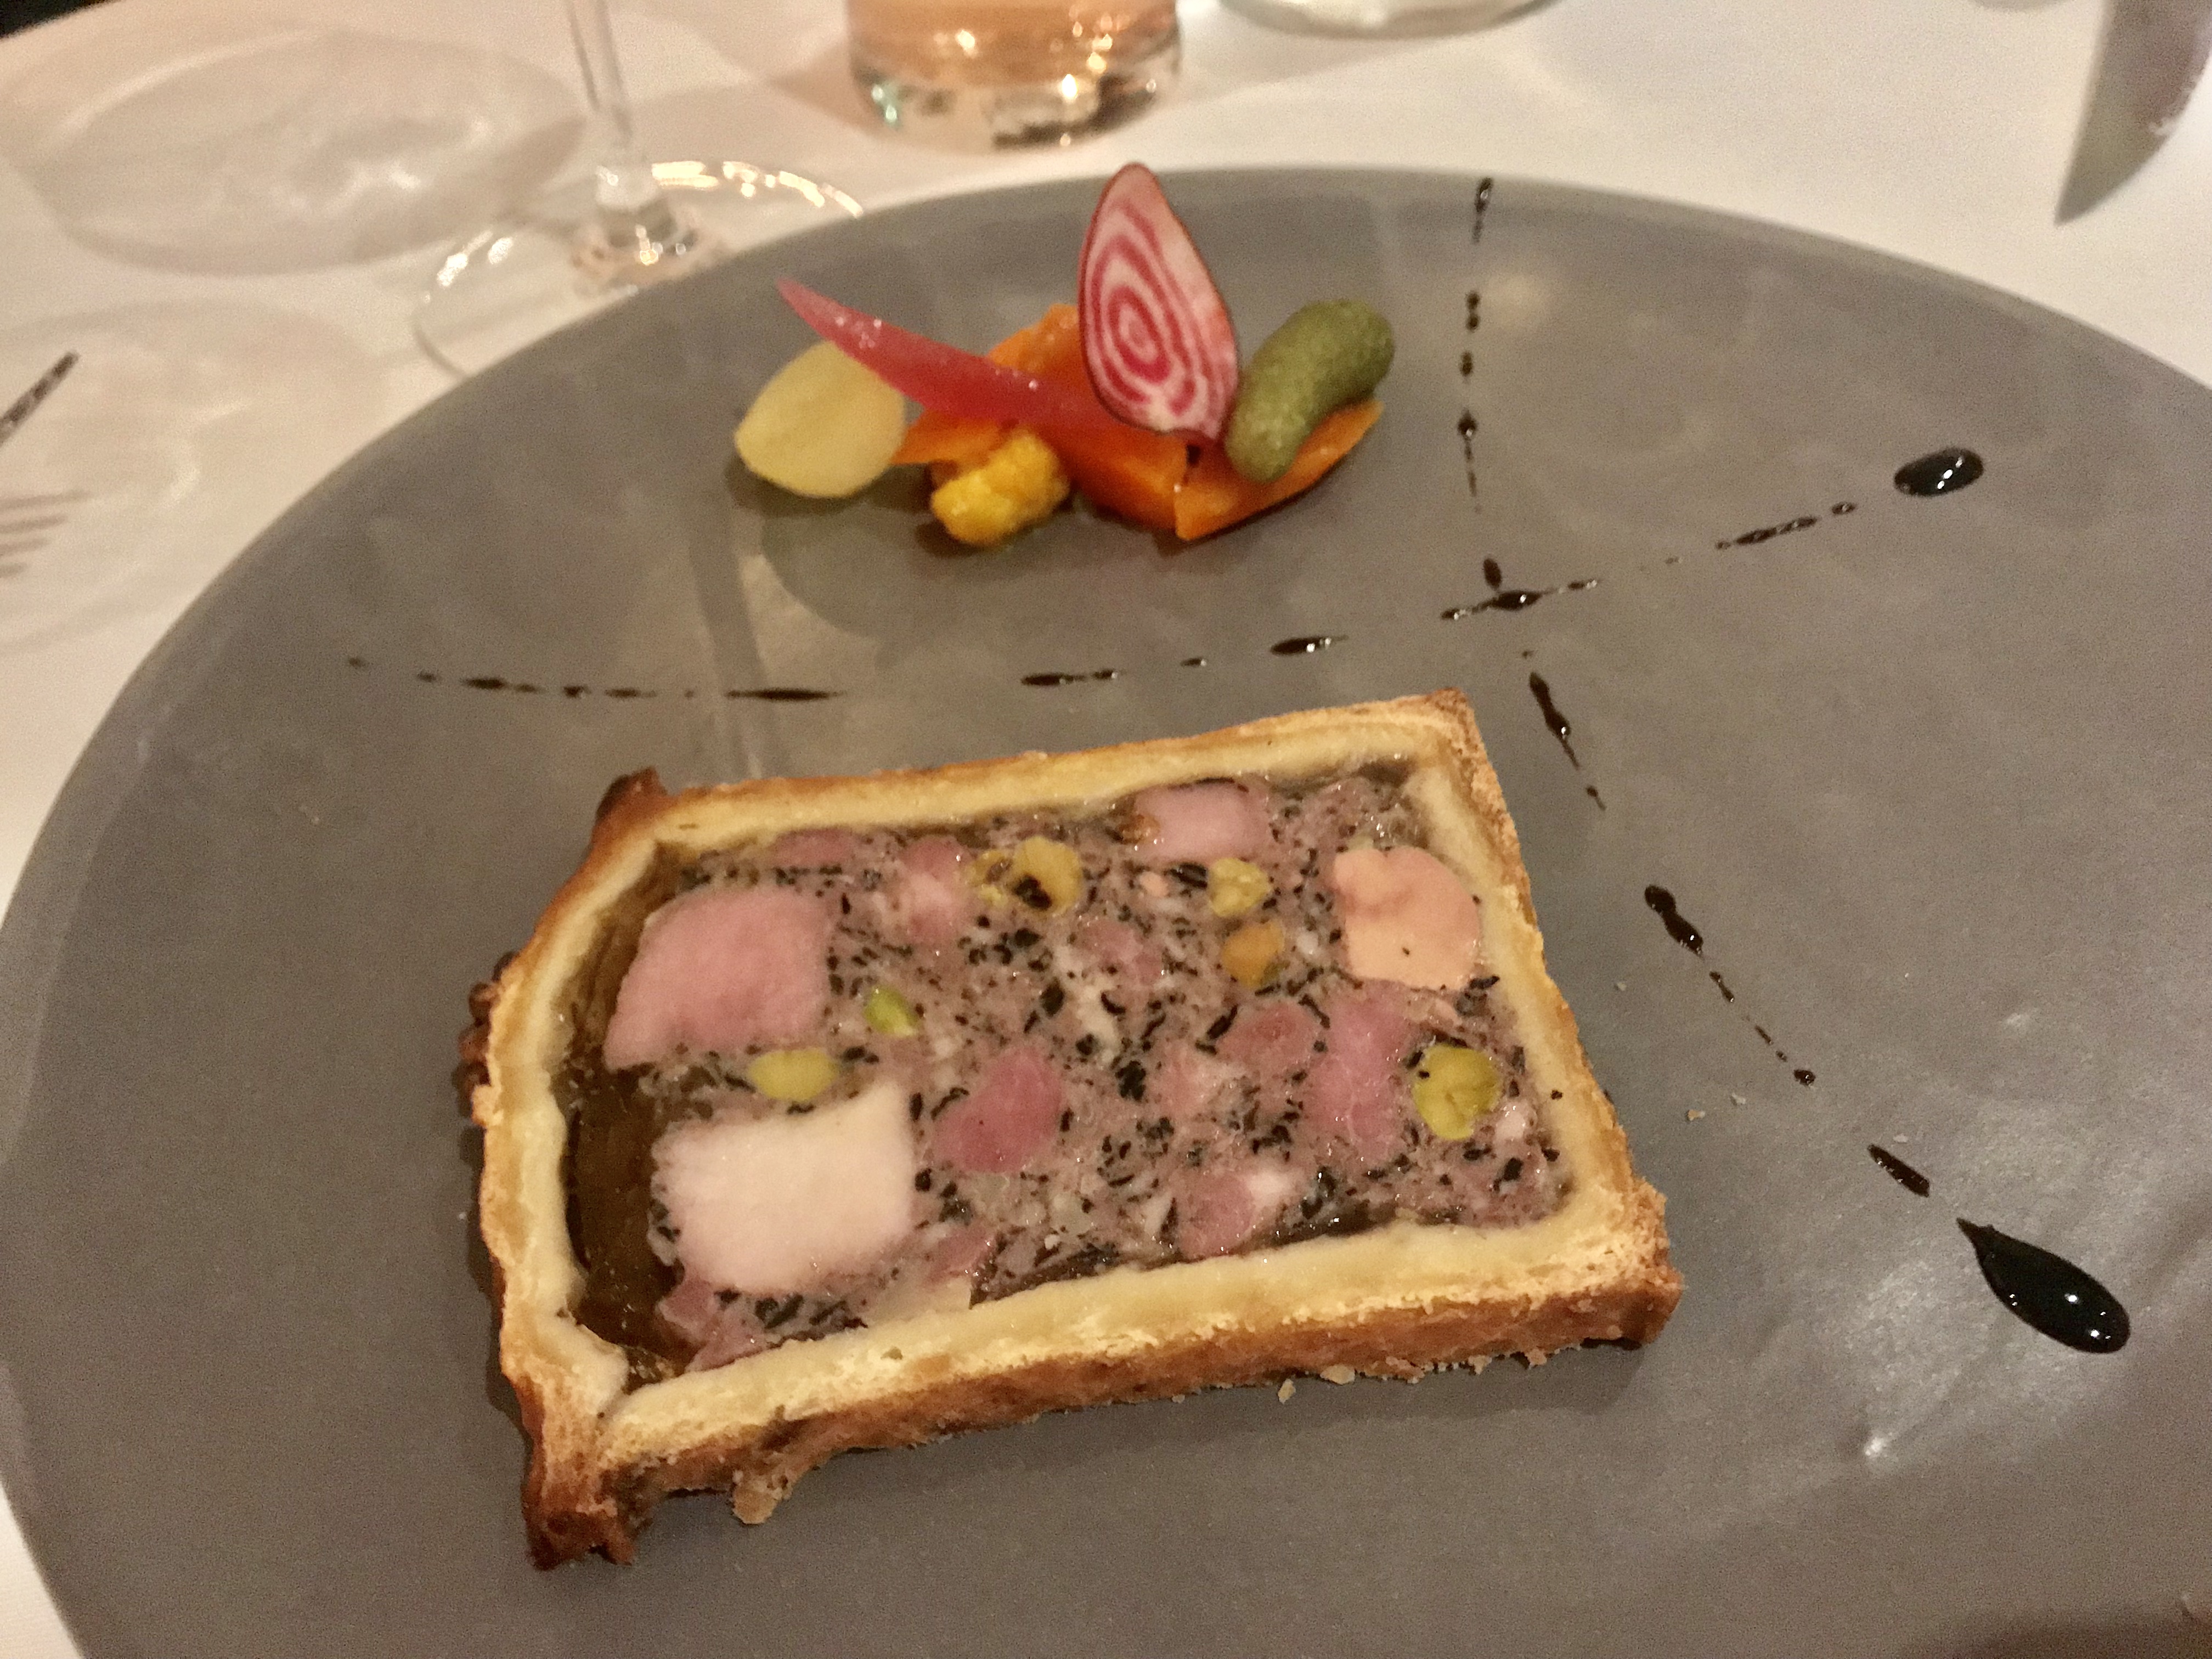 Pâté croûte, pork, veal, foie gras, pistachios, mushrooms, pickled vegetables by Philippe Mouchel